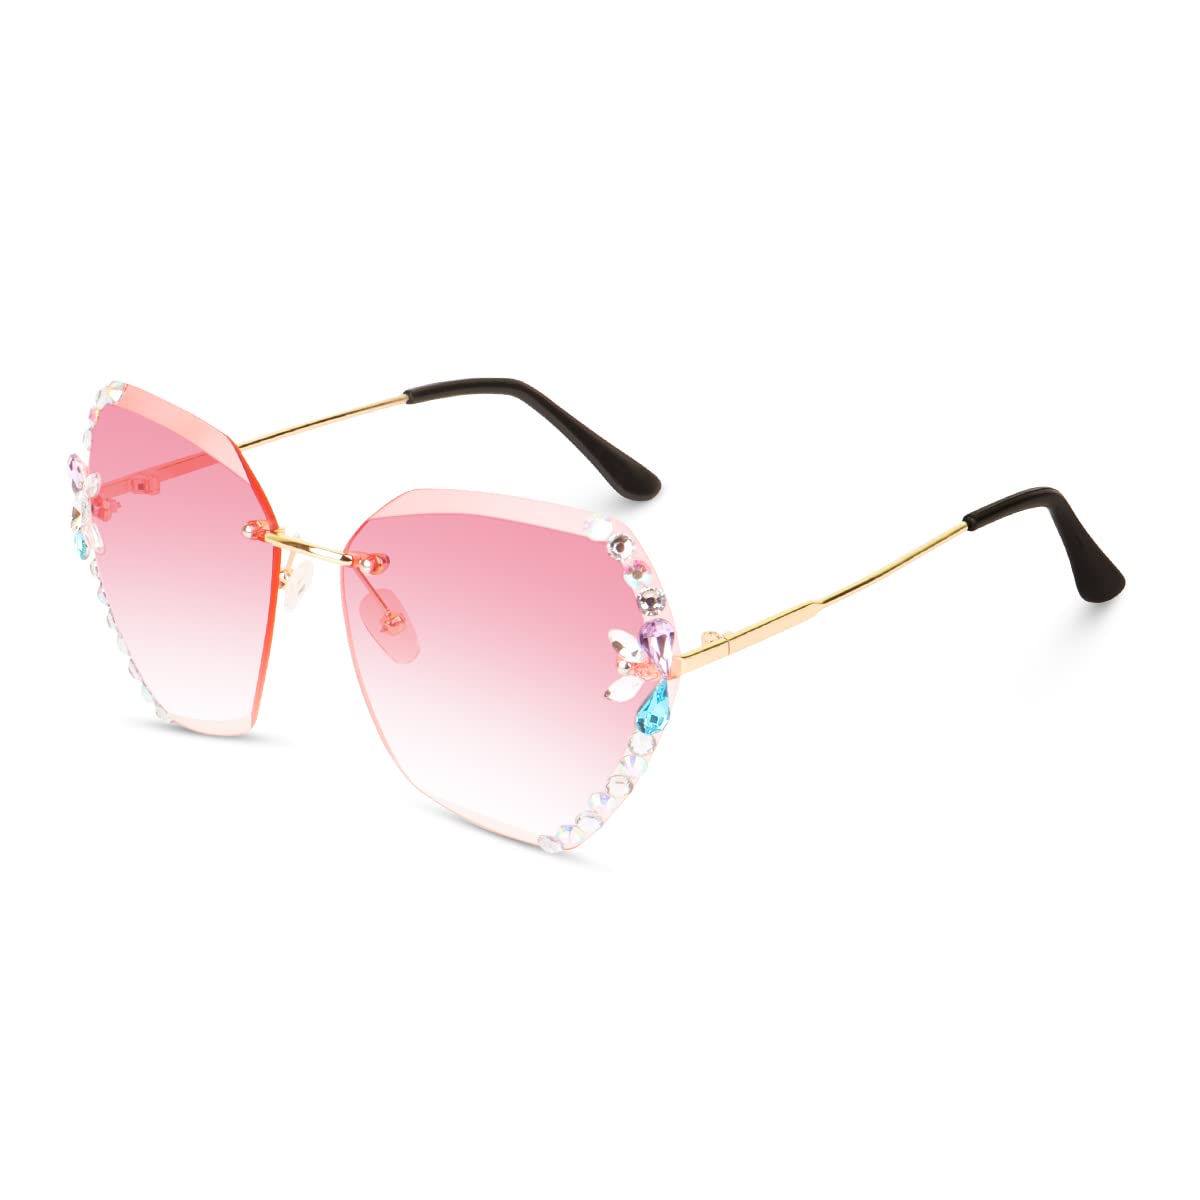 BLACK JONES Polarized Sunglasses For Men and Women Wayfarer UV